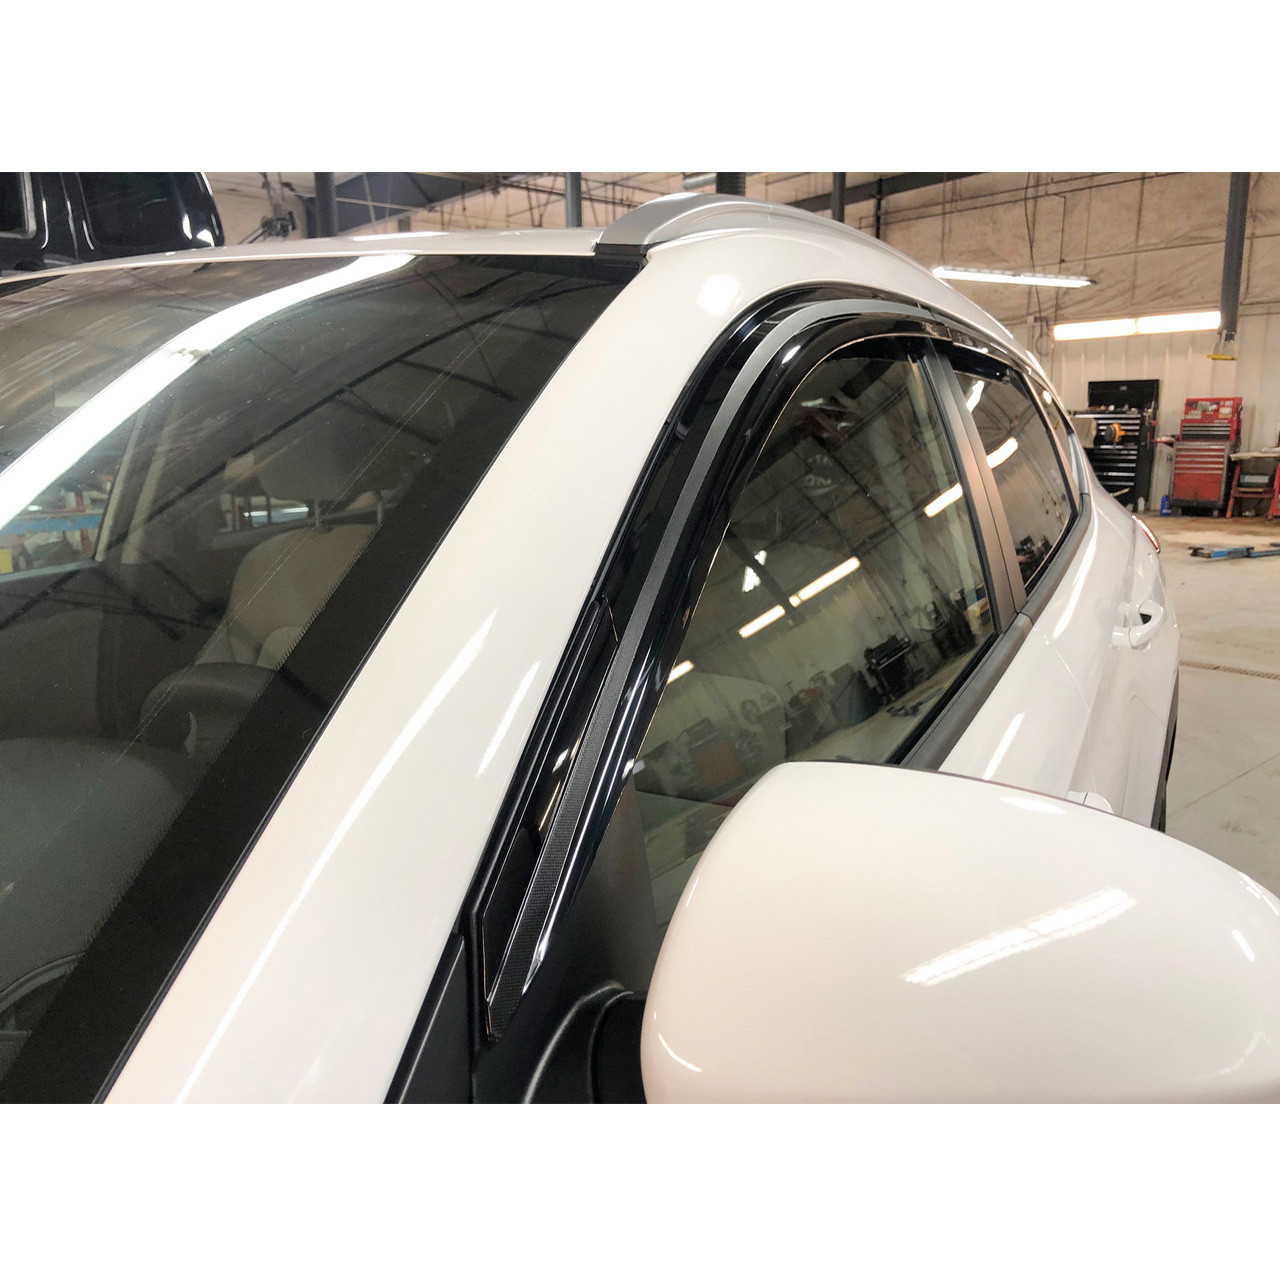 Auto Windschutzscheibe Sonnenschutz für Hyundai Santa Fe SUV 2019 2020  2021, Sonnenschutz für Frontscheibe Innen, Reflektierender UV Staub Schutz